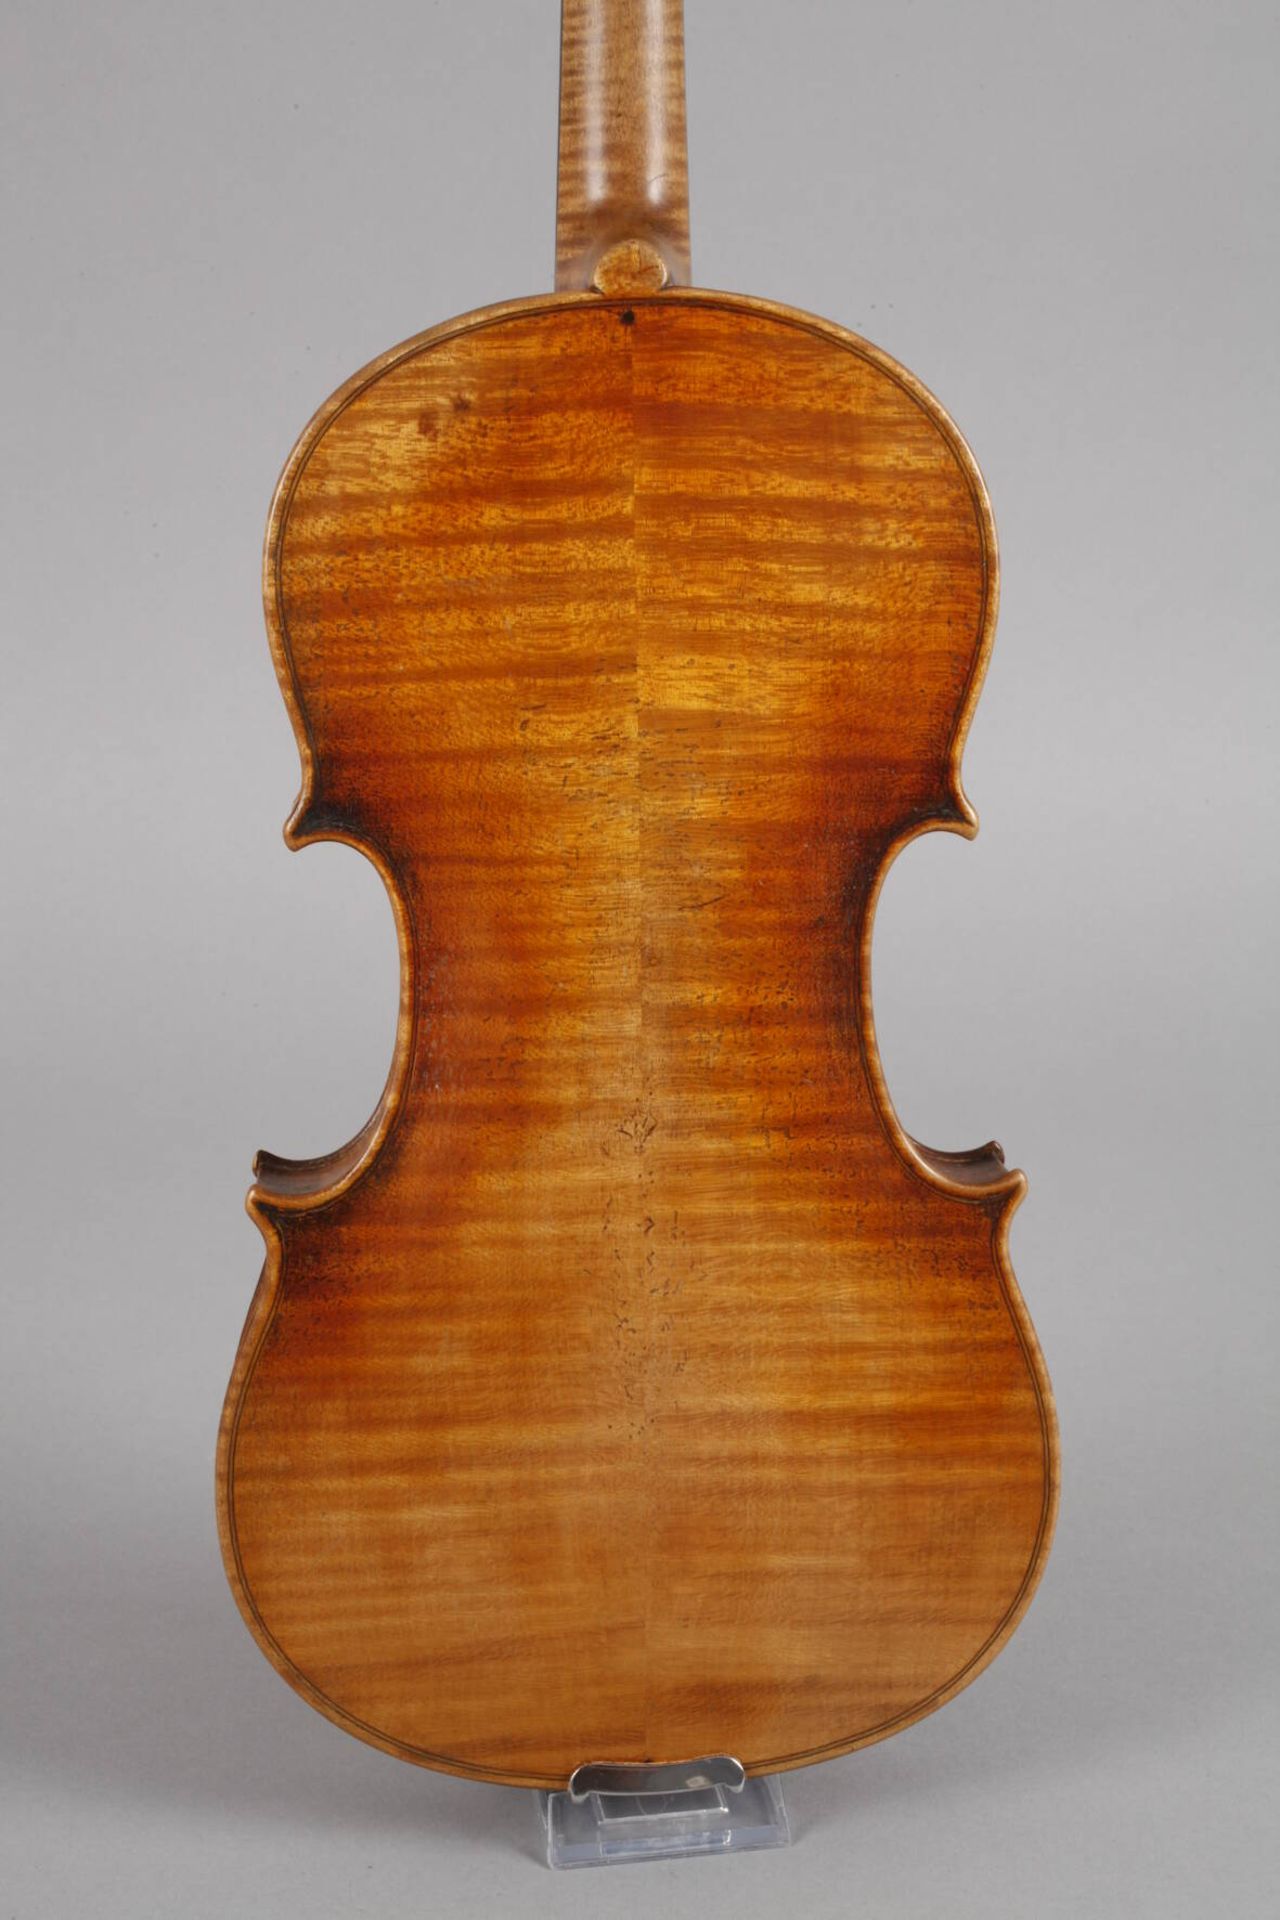 Violine auf Klebezettel bez. Ferd. A. Homoika Prage dat. 18... sowie ein weiterer unleserlicher - Bild 3 aus 6